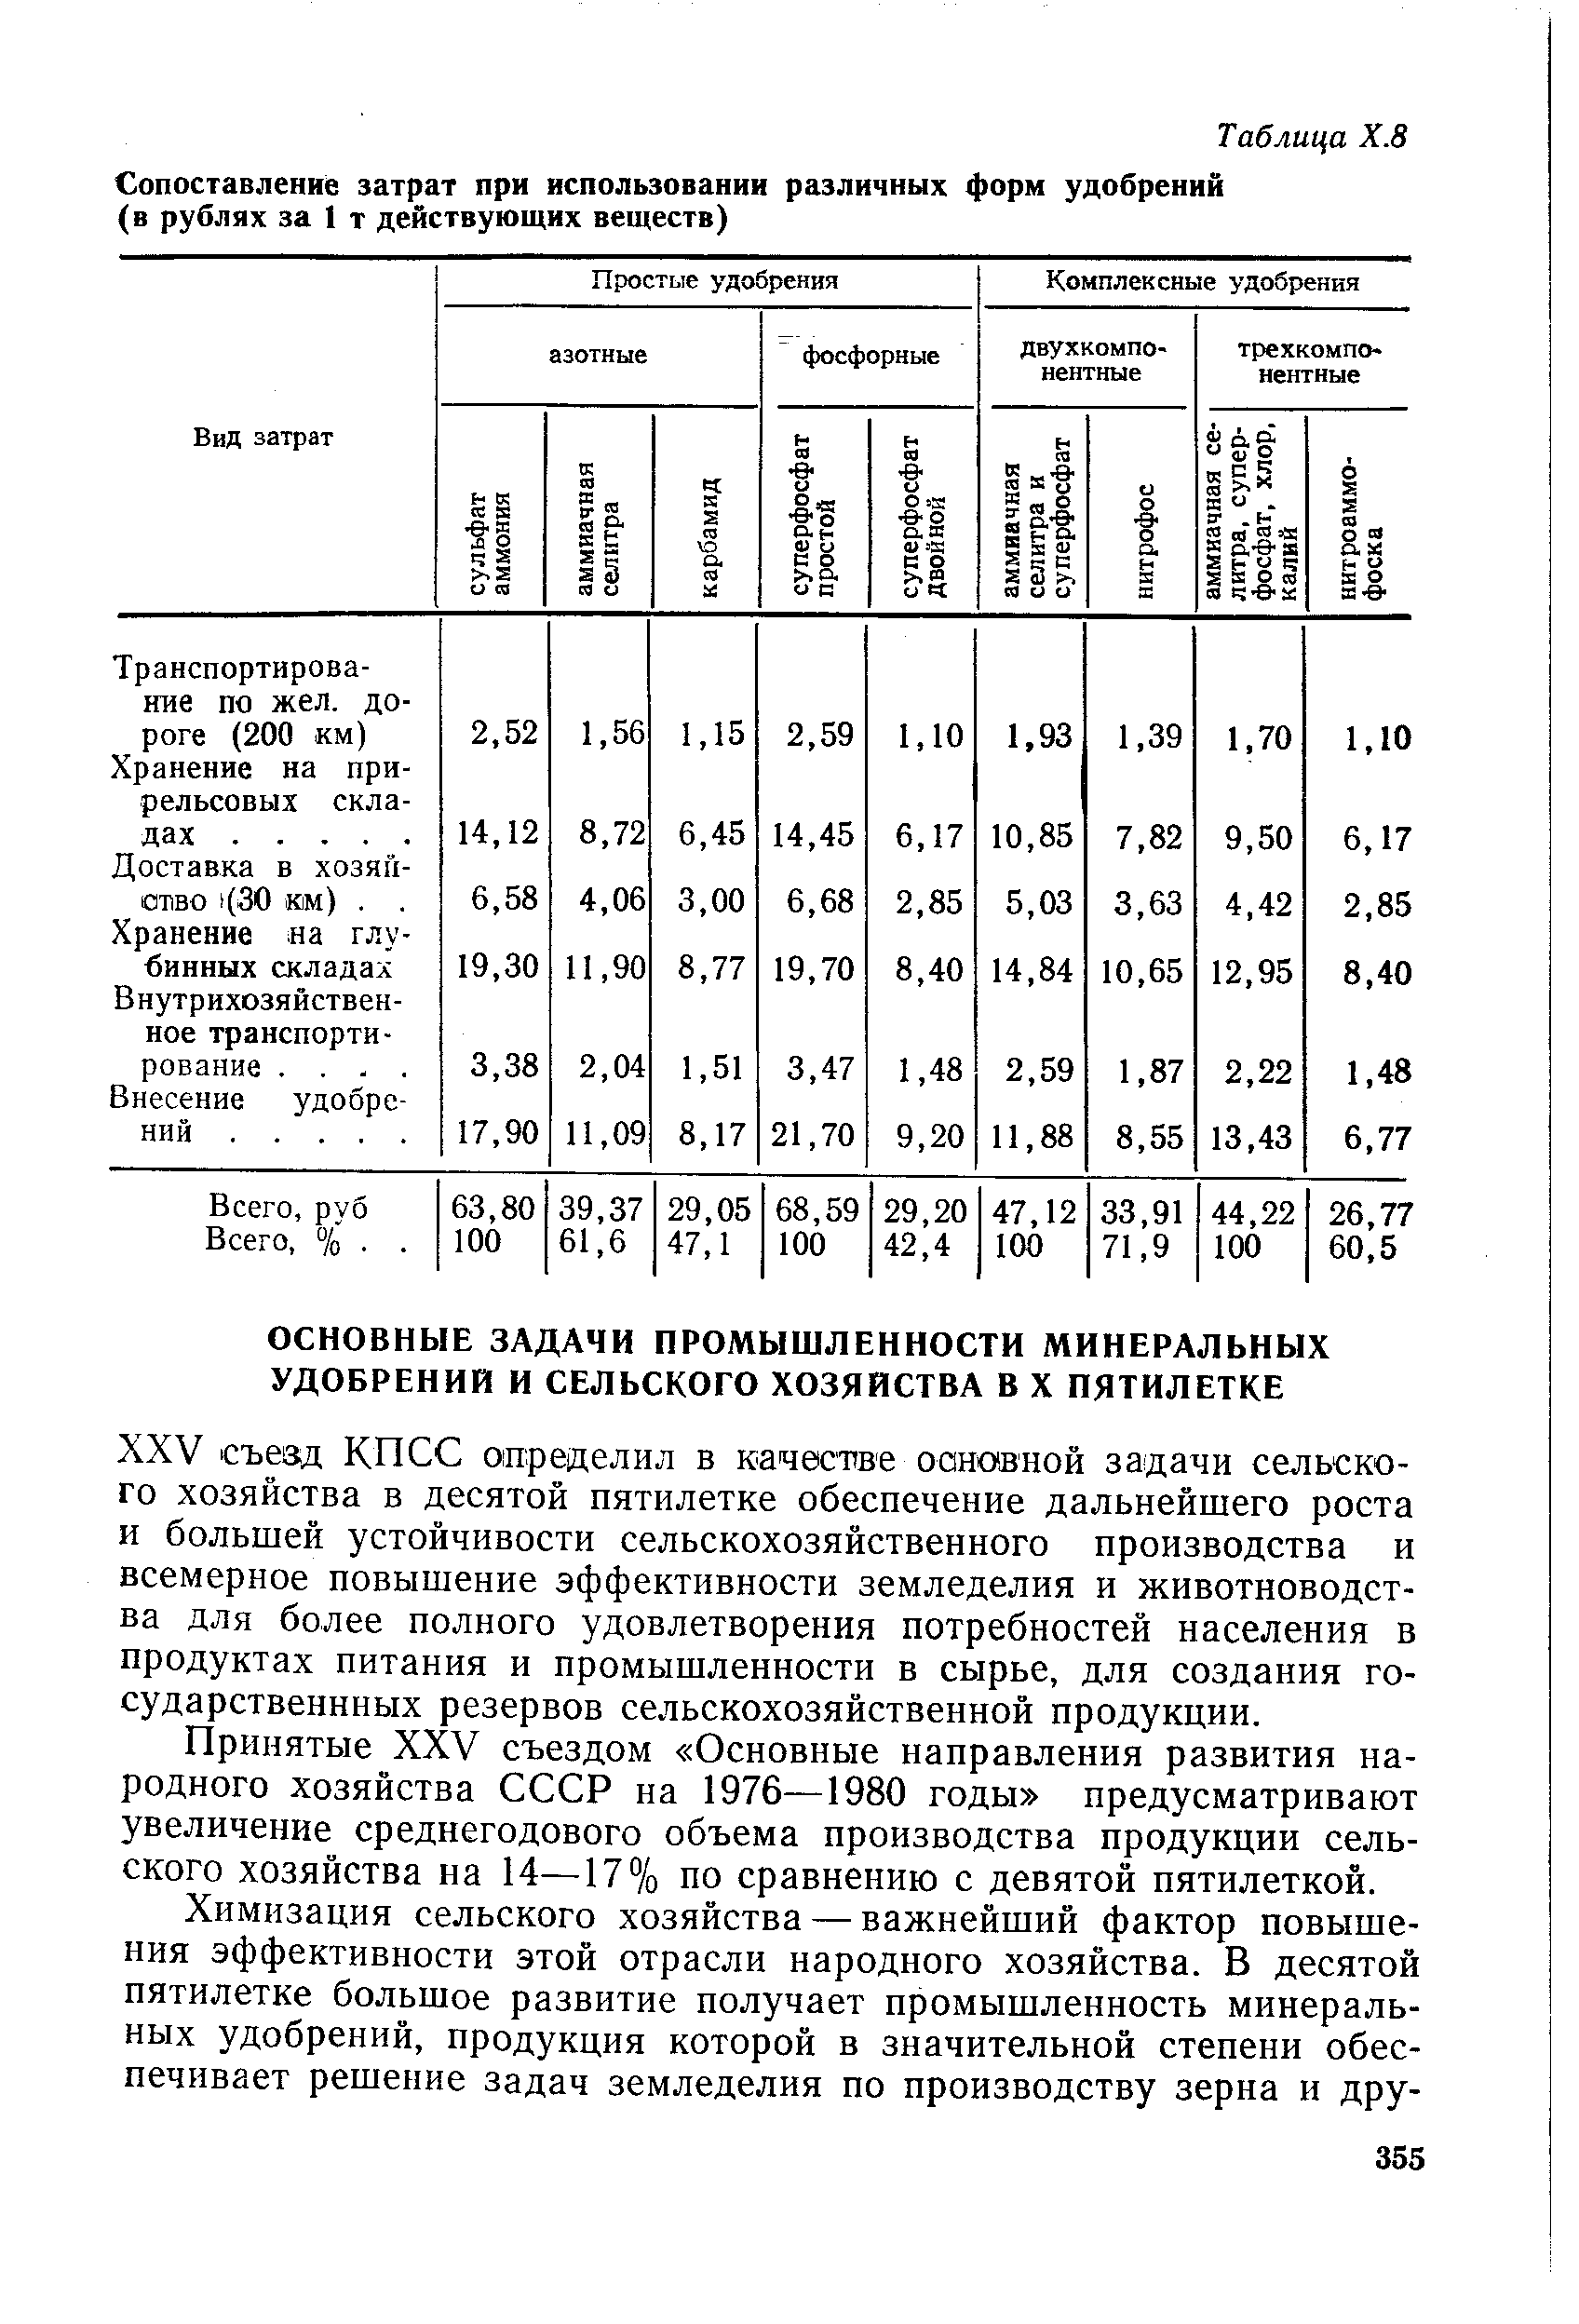 Принятые XXV съездом Основные направления развития народного хозяйства СССР на 1976—1980 годы предусматривают увеличение среднегодового объема производства продукции сельского хозяйства на 14—17% по сравнению с девятой пятилеткой.